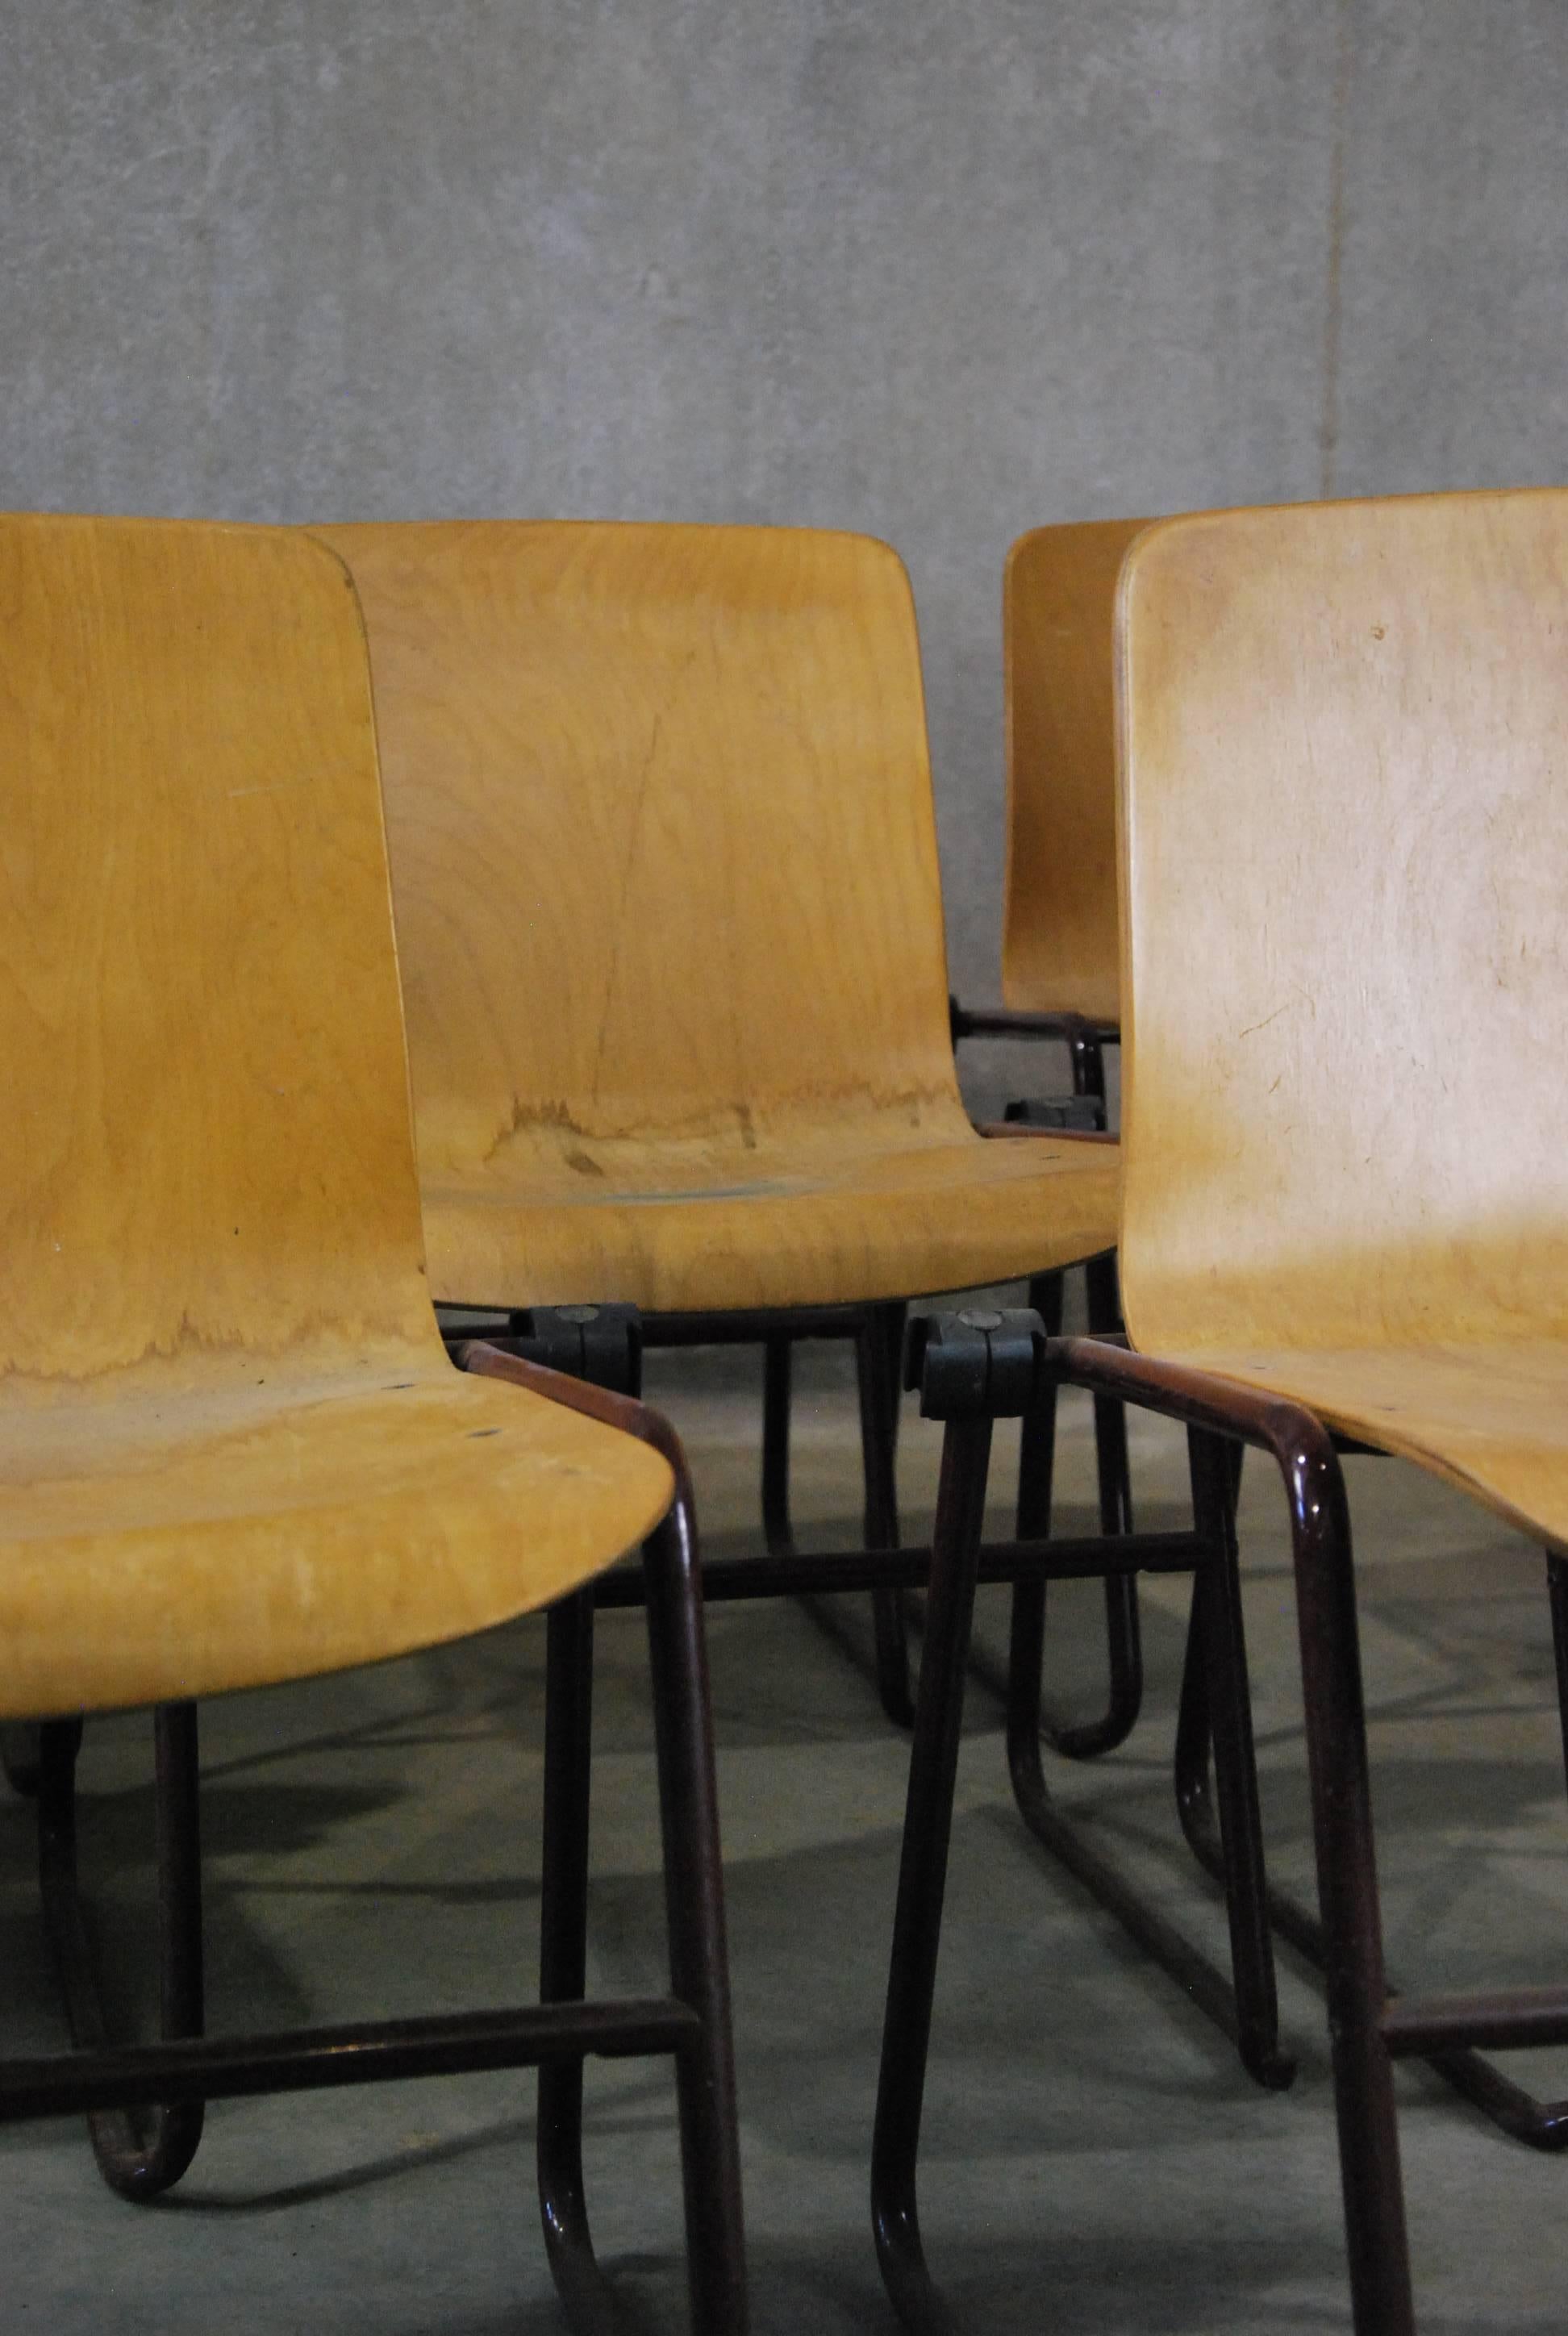 Diese ungewöhnlichen Kinetics-Stühle aus gebogenem Sperrholz wurden in den 1980er Jahren hergestellt, obwohl ihr Aussehen der Jahrhundertmitte entspricht. Die Eisenbeine sind mit einem Verriegelungsmechanismus versehen, der es ermöglicht, die Stühle